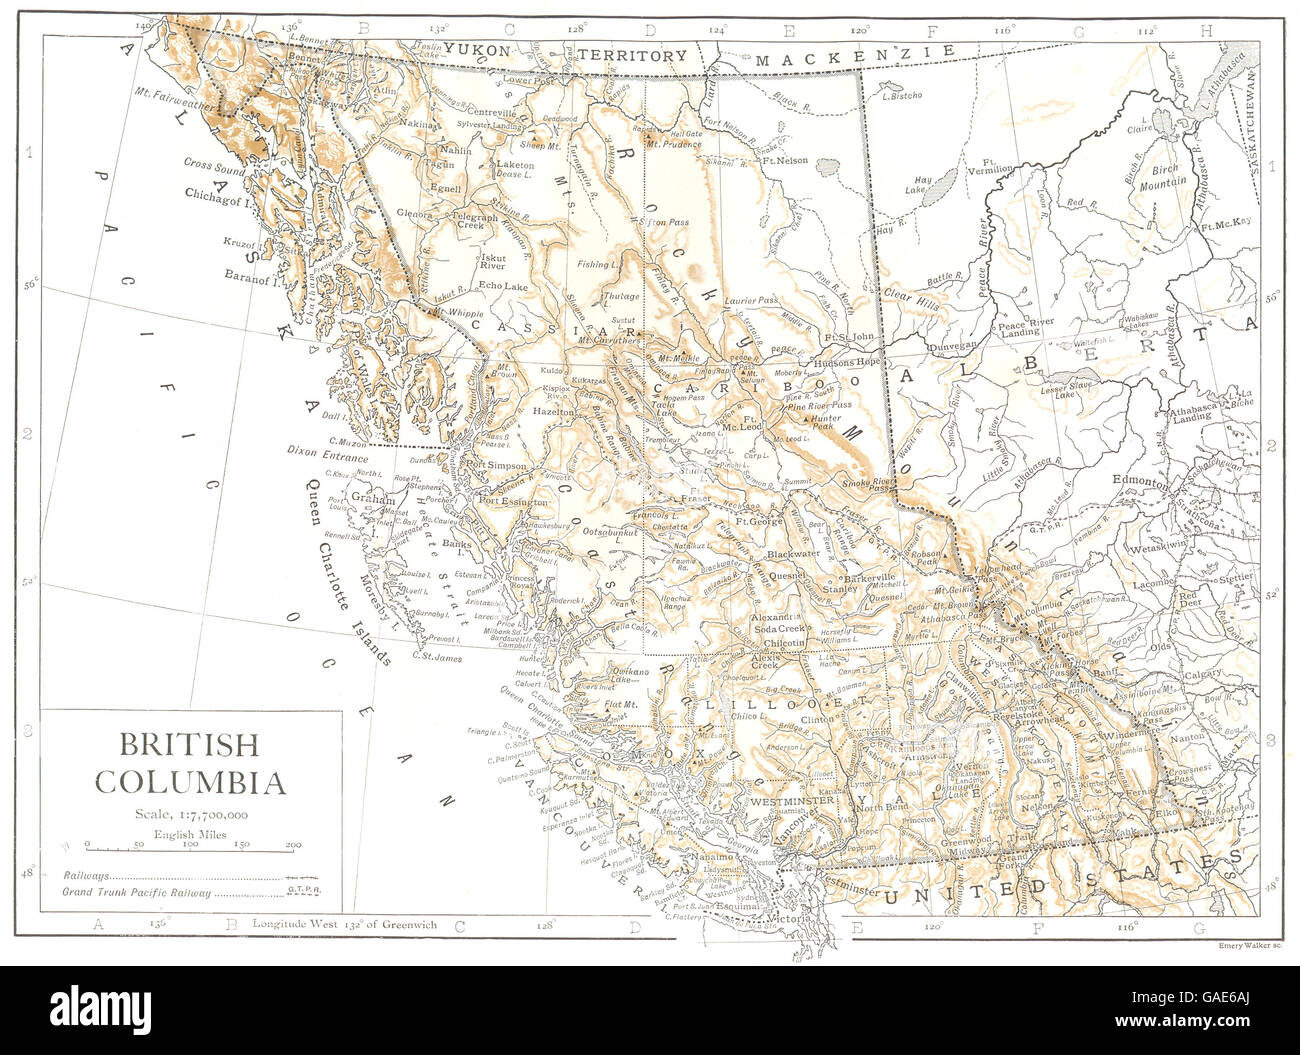 CANADA: British Columbia, 1910 antique map Stock Photo